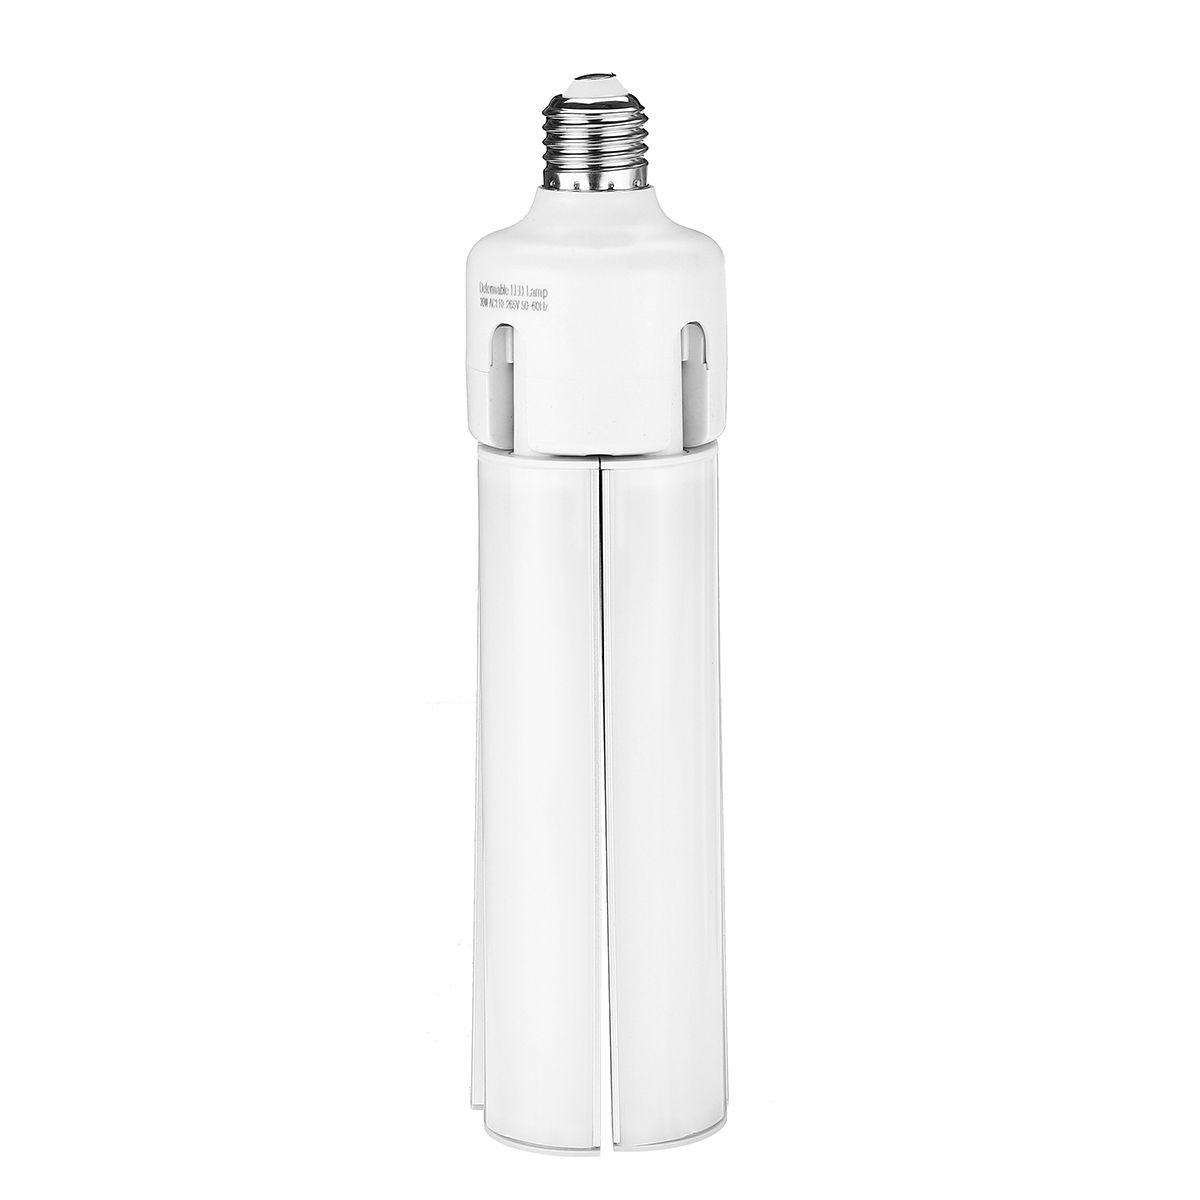 E27-Deformable-LED-Garage-Light-Bulb-Foldable-Ceiling-Fixture-Shop-Workshop-Lamp-110-265V-1674714